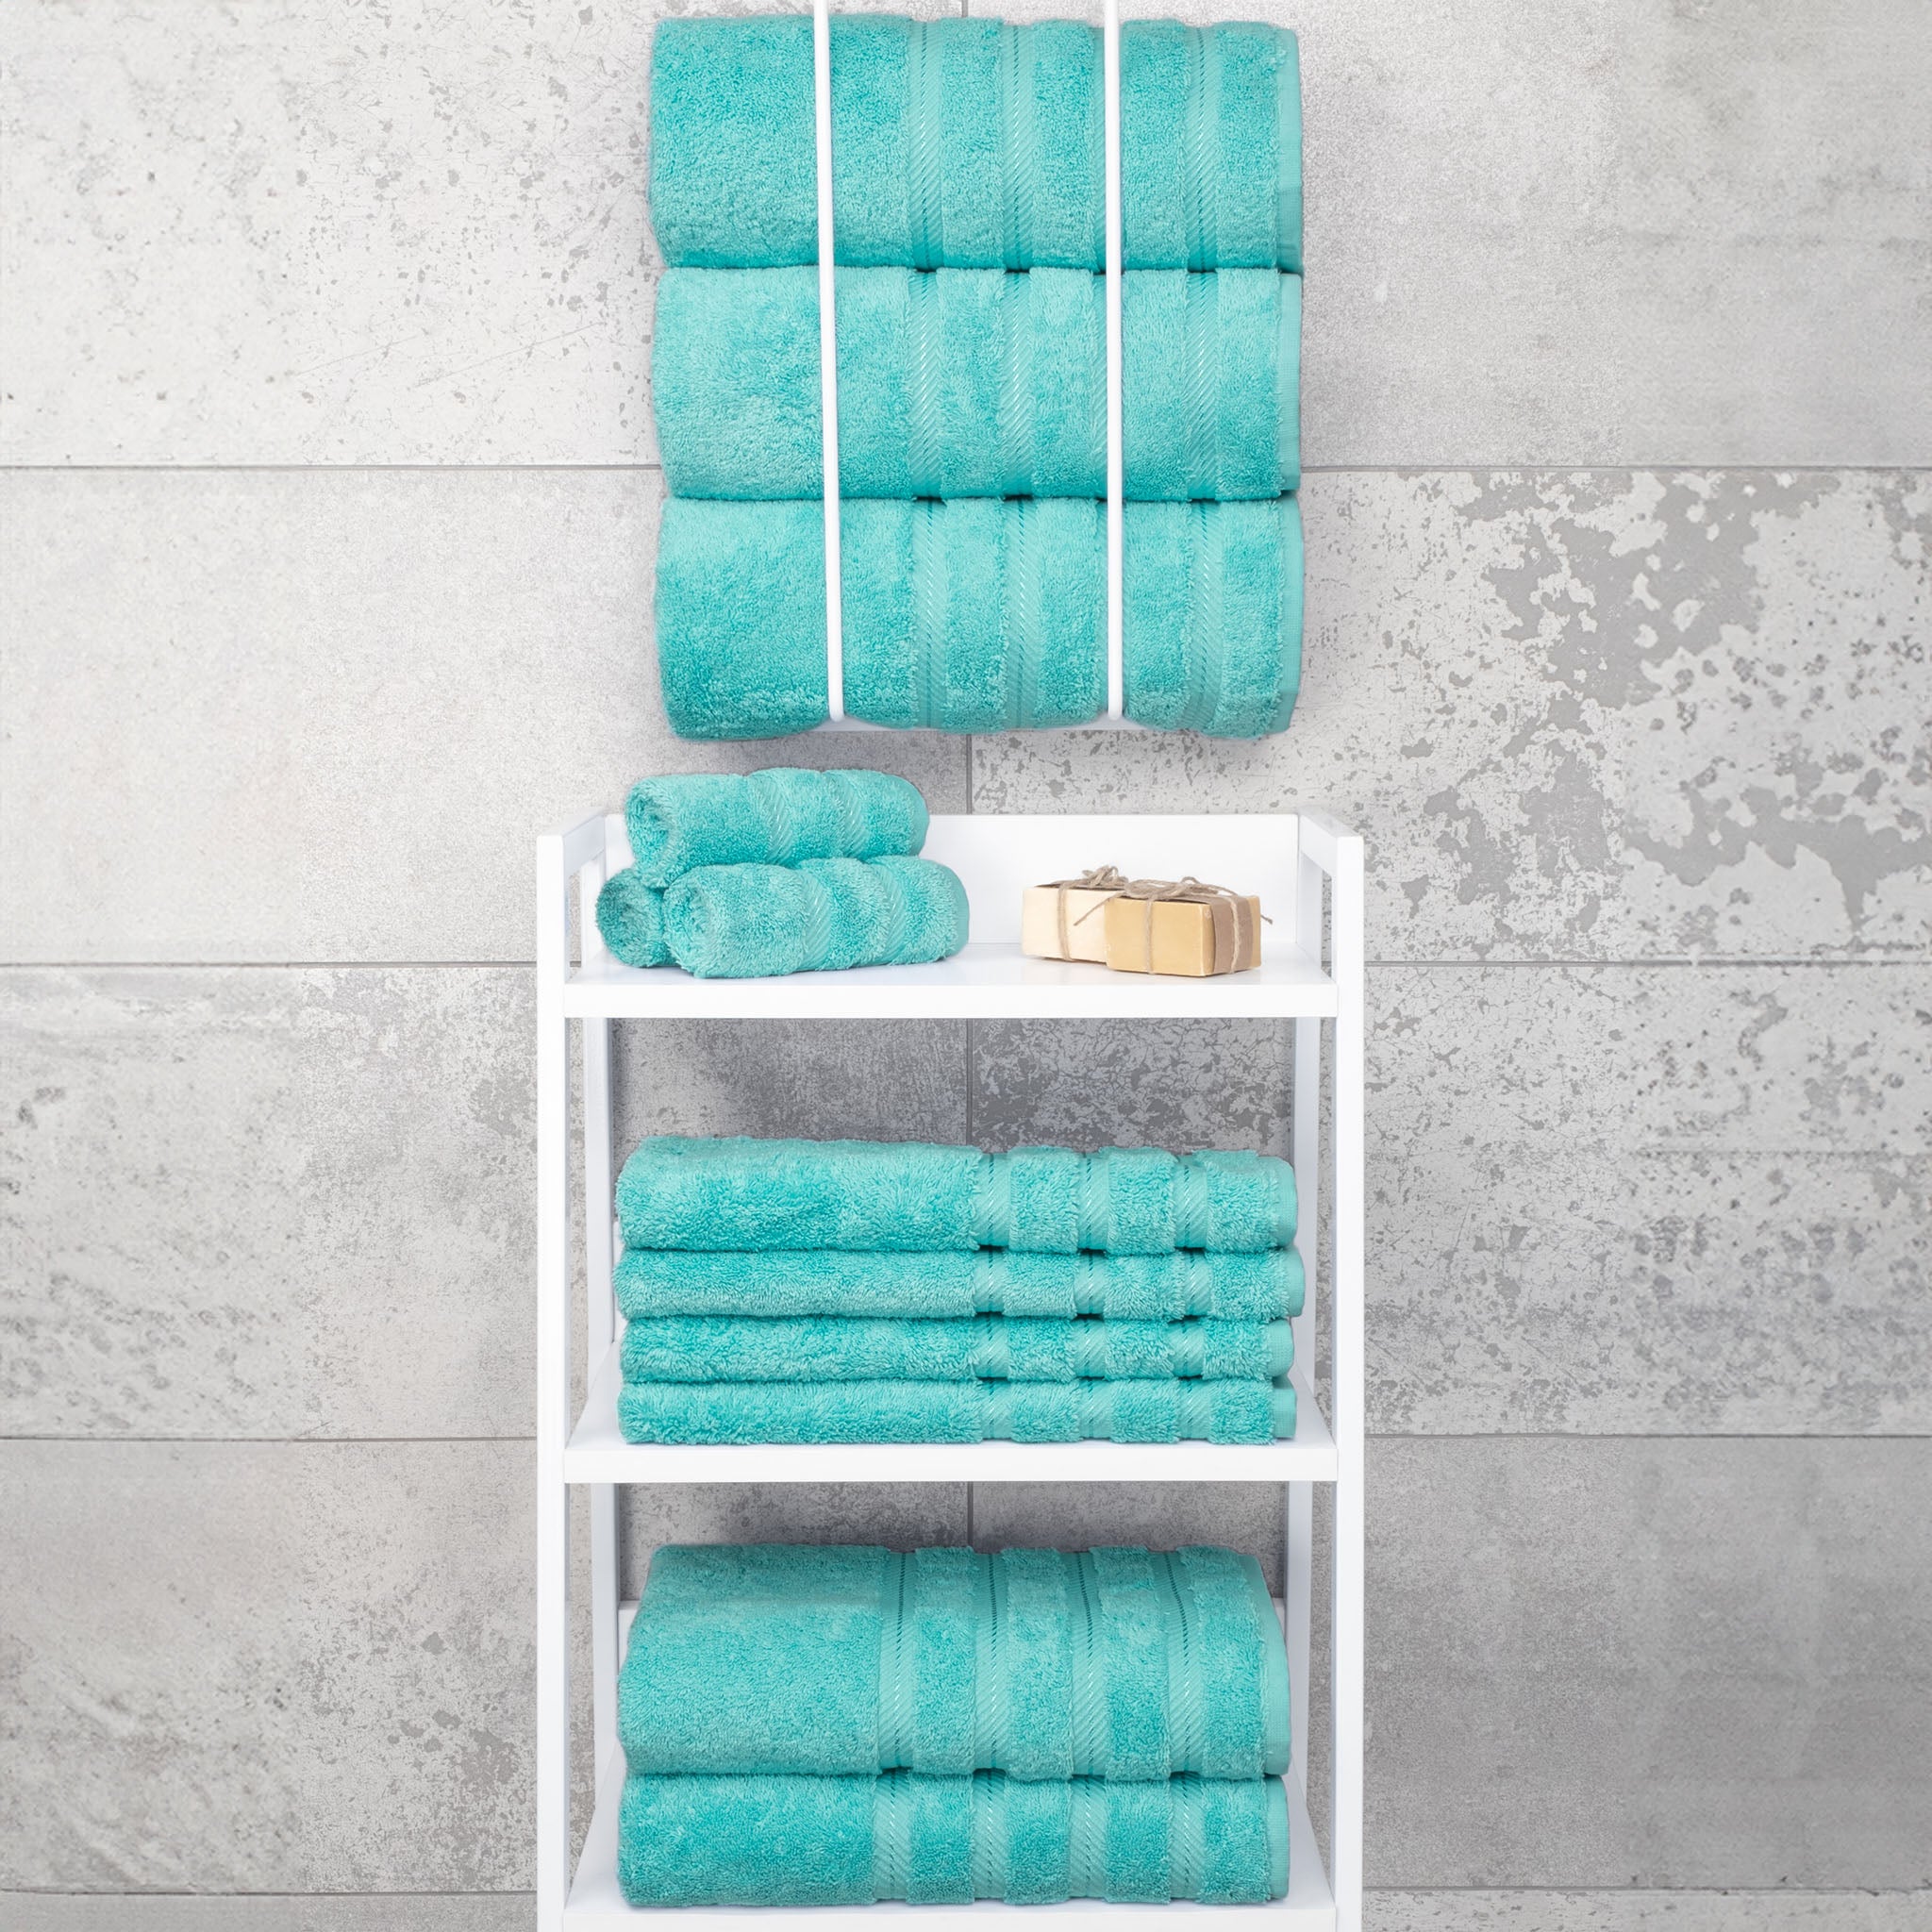 American Soft Linen 100% Turkish Cotton 4 Pack Bath Towel Set Wholesale turquoise-blue-7